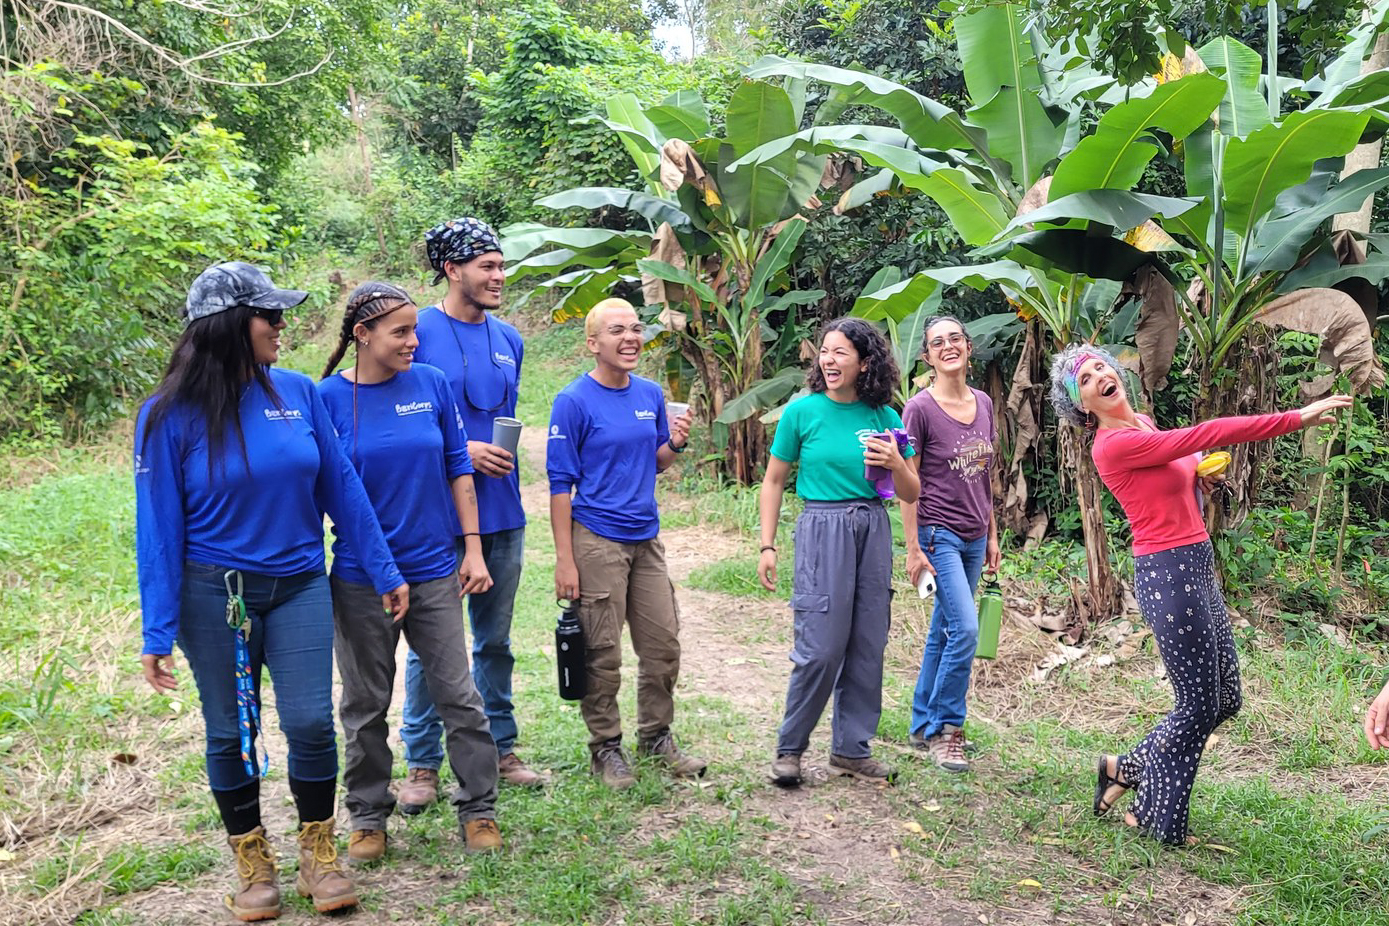 From left to right: Pamela Serrano, Karina Carrasquillo, Jesus Andres, Gabriela Echevarria-Colon, Rocio Del Mar, Sharleen Ortiz, and Maria Benedetti in the Rio Hondo Community Forest (Photo: BoriCorps)